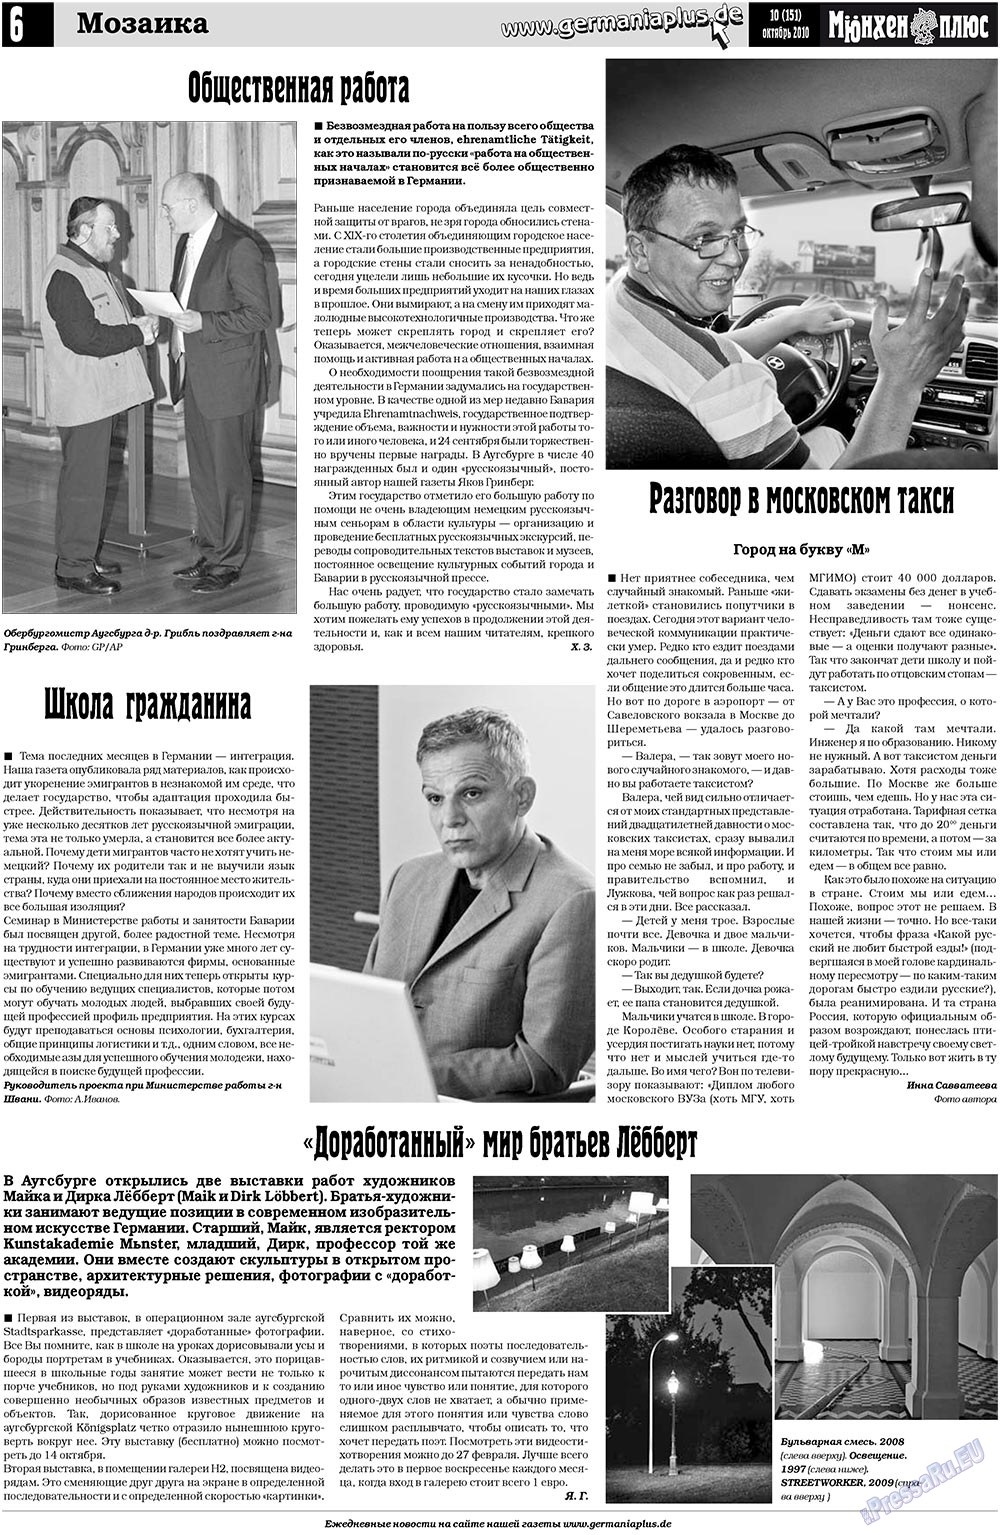 Германия плюс (газета). 2010 год, номер 10, стр. 6